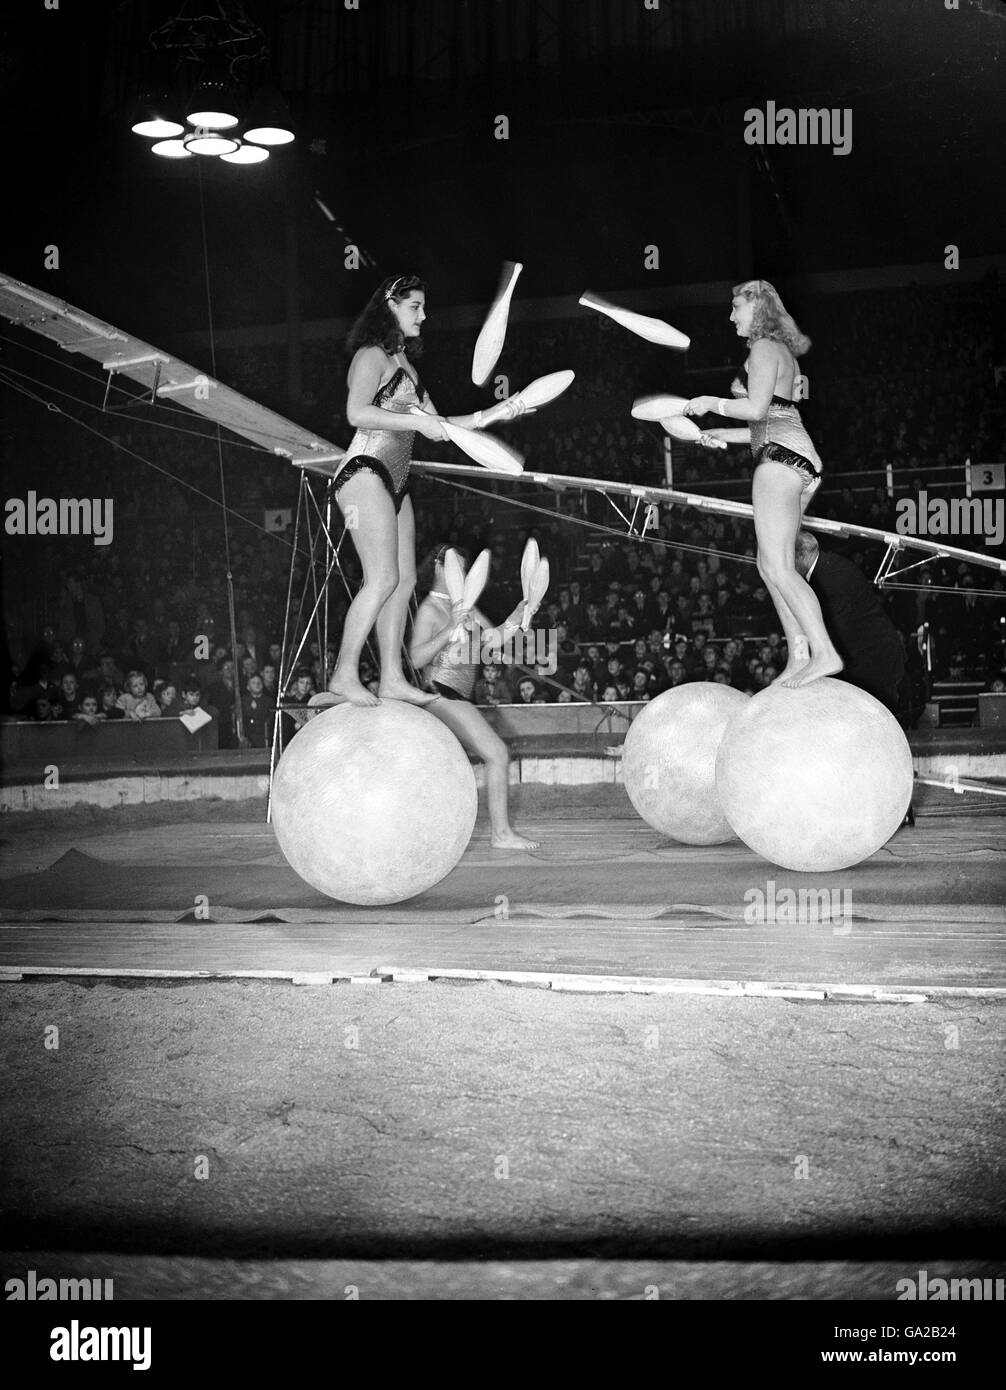 Intrattenimento - Bertram Mills Circus Reheersal - Olympia Londra. Le sorelle Rogge mostrano il loro incredibile equilibrio e abilità di giocoleria mentre si levano in piedi su palle enormi. Foto Stock